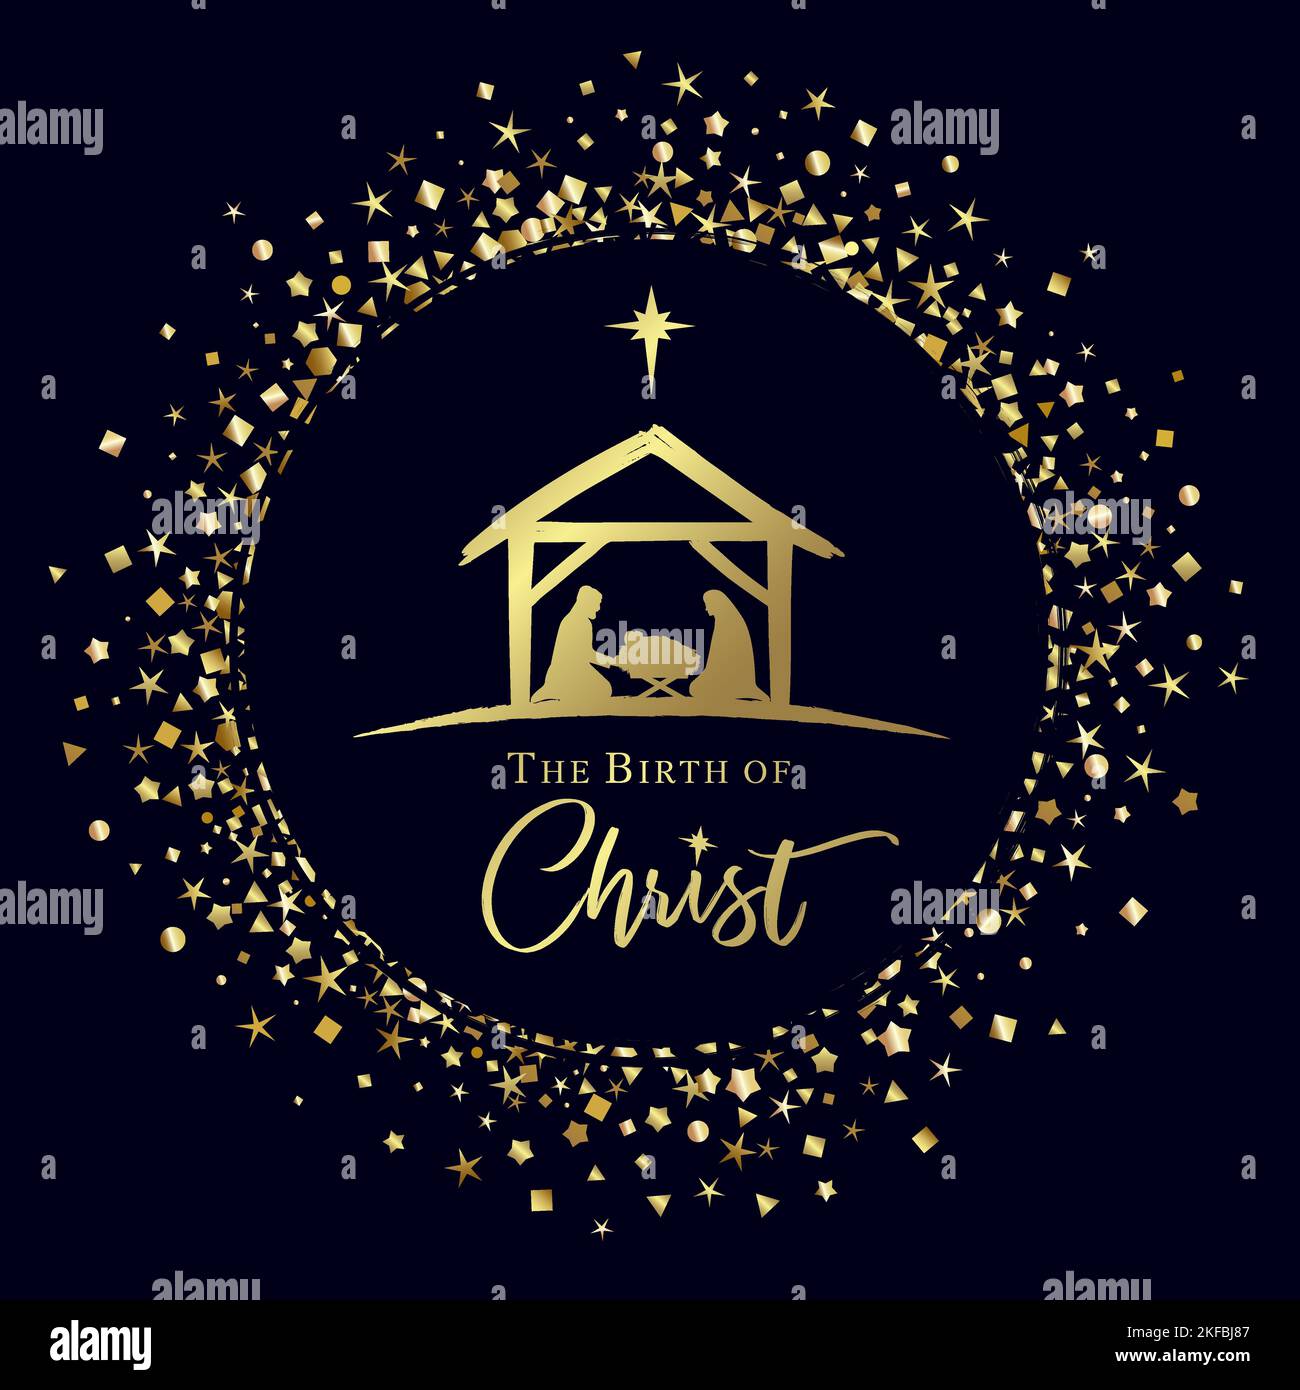 La naissance de Christ Nativité scène dans le cercle d'or avec des confettis scintillants. Joyeux Noël scène de bébé Jésus dans la mangeoire avec Marie, Joseph Illustration de Vecteur